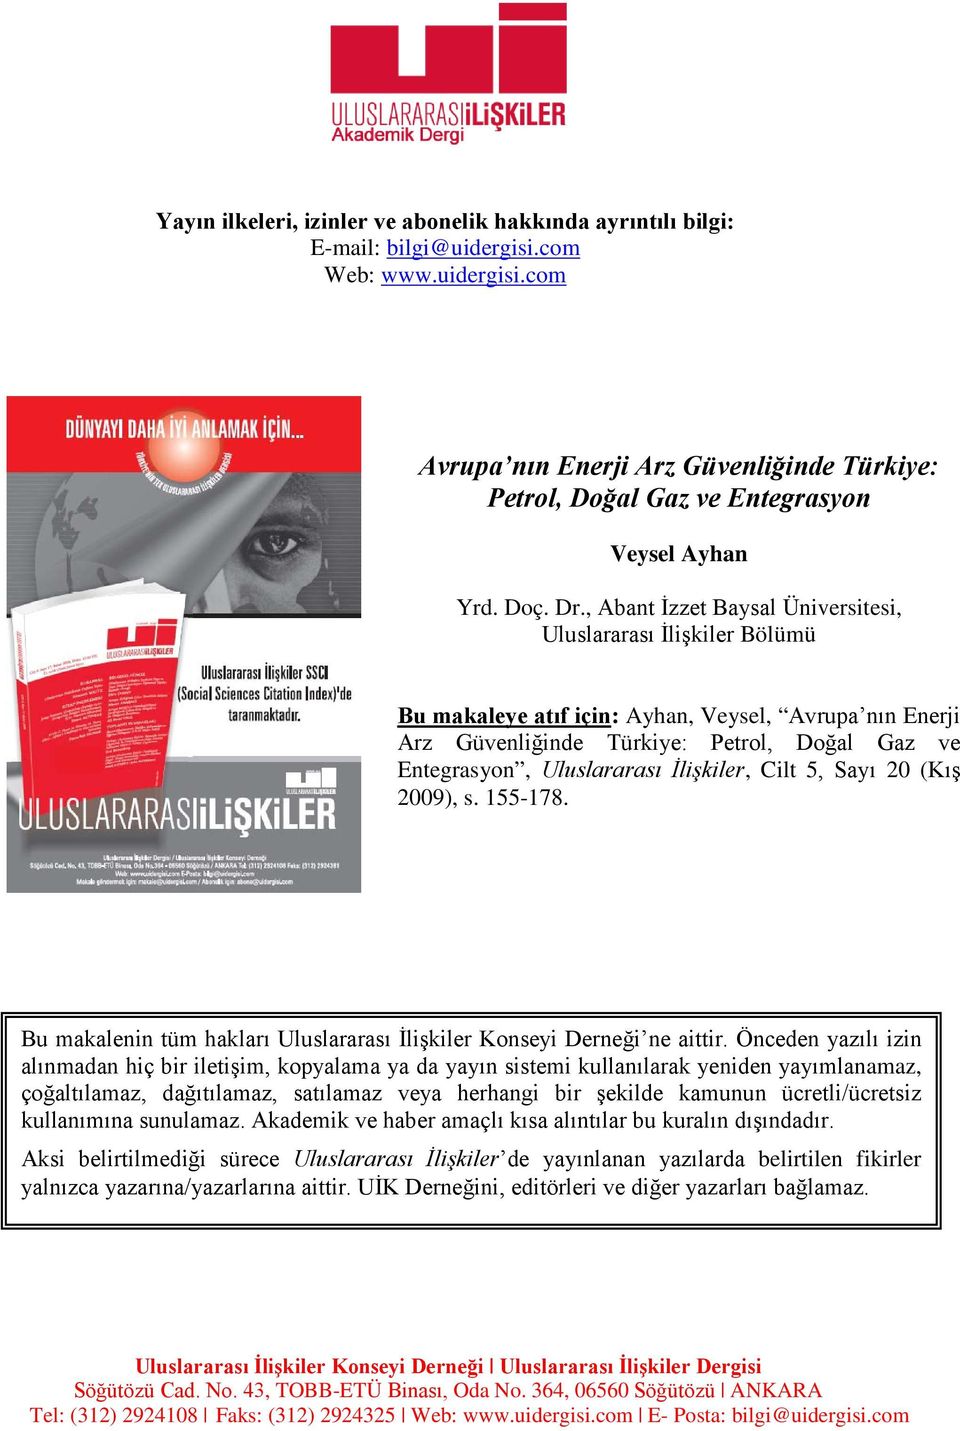 , Abant İzzet Baysal Üniversitesi, Uluslararası İlişkiler Bölümü Bu makaleye atıf için: Ayhan, Veysel, Avrupa nın Enerji Arz Güvenliğinde Türkiye: Petrol, Doğal Gaz ve Entegrasyon, Uluslararası